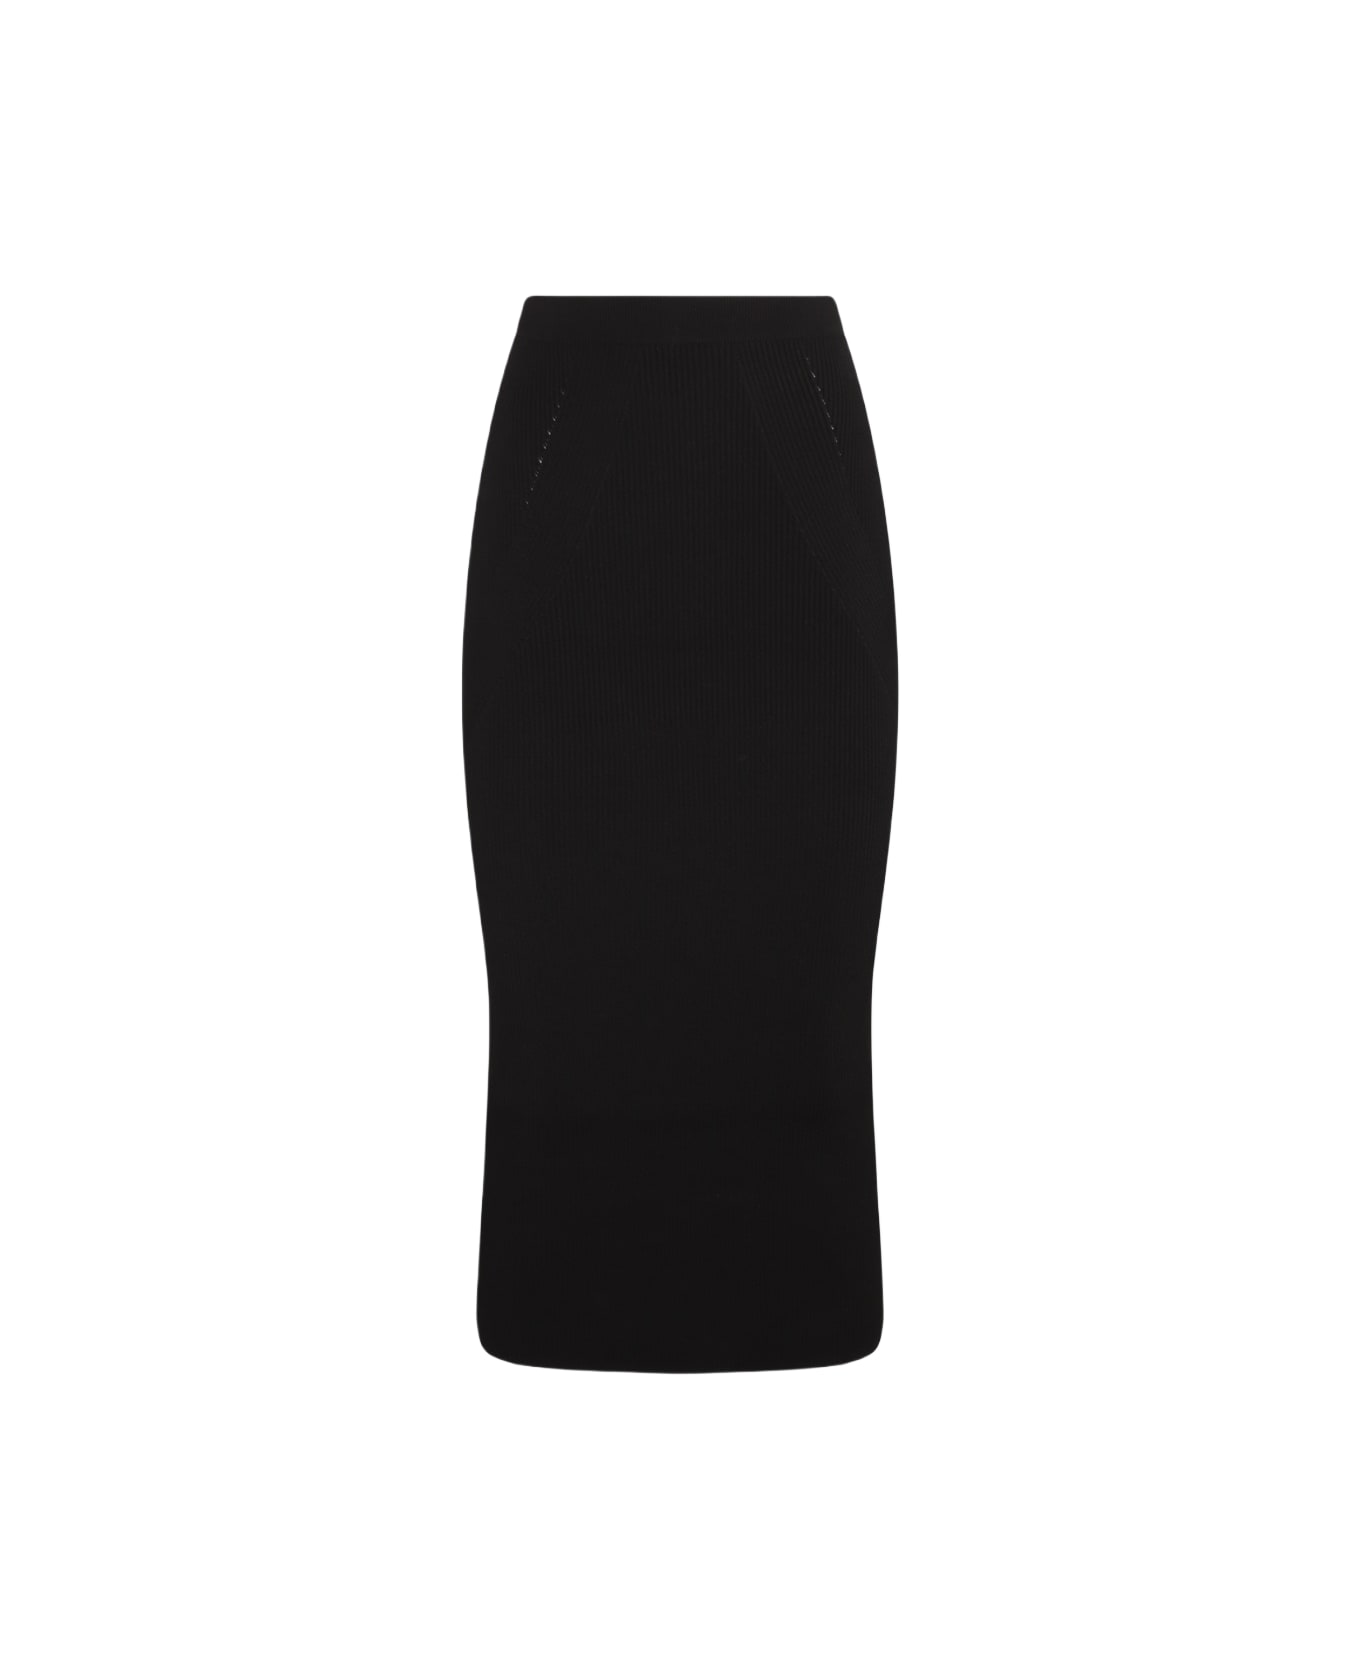 Alexander McQueen Black Wool Blend Skirt - Black